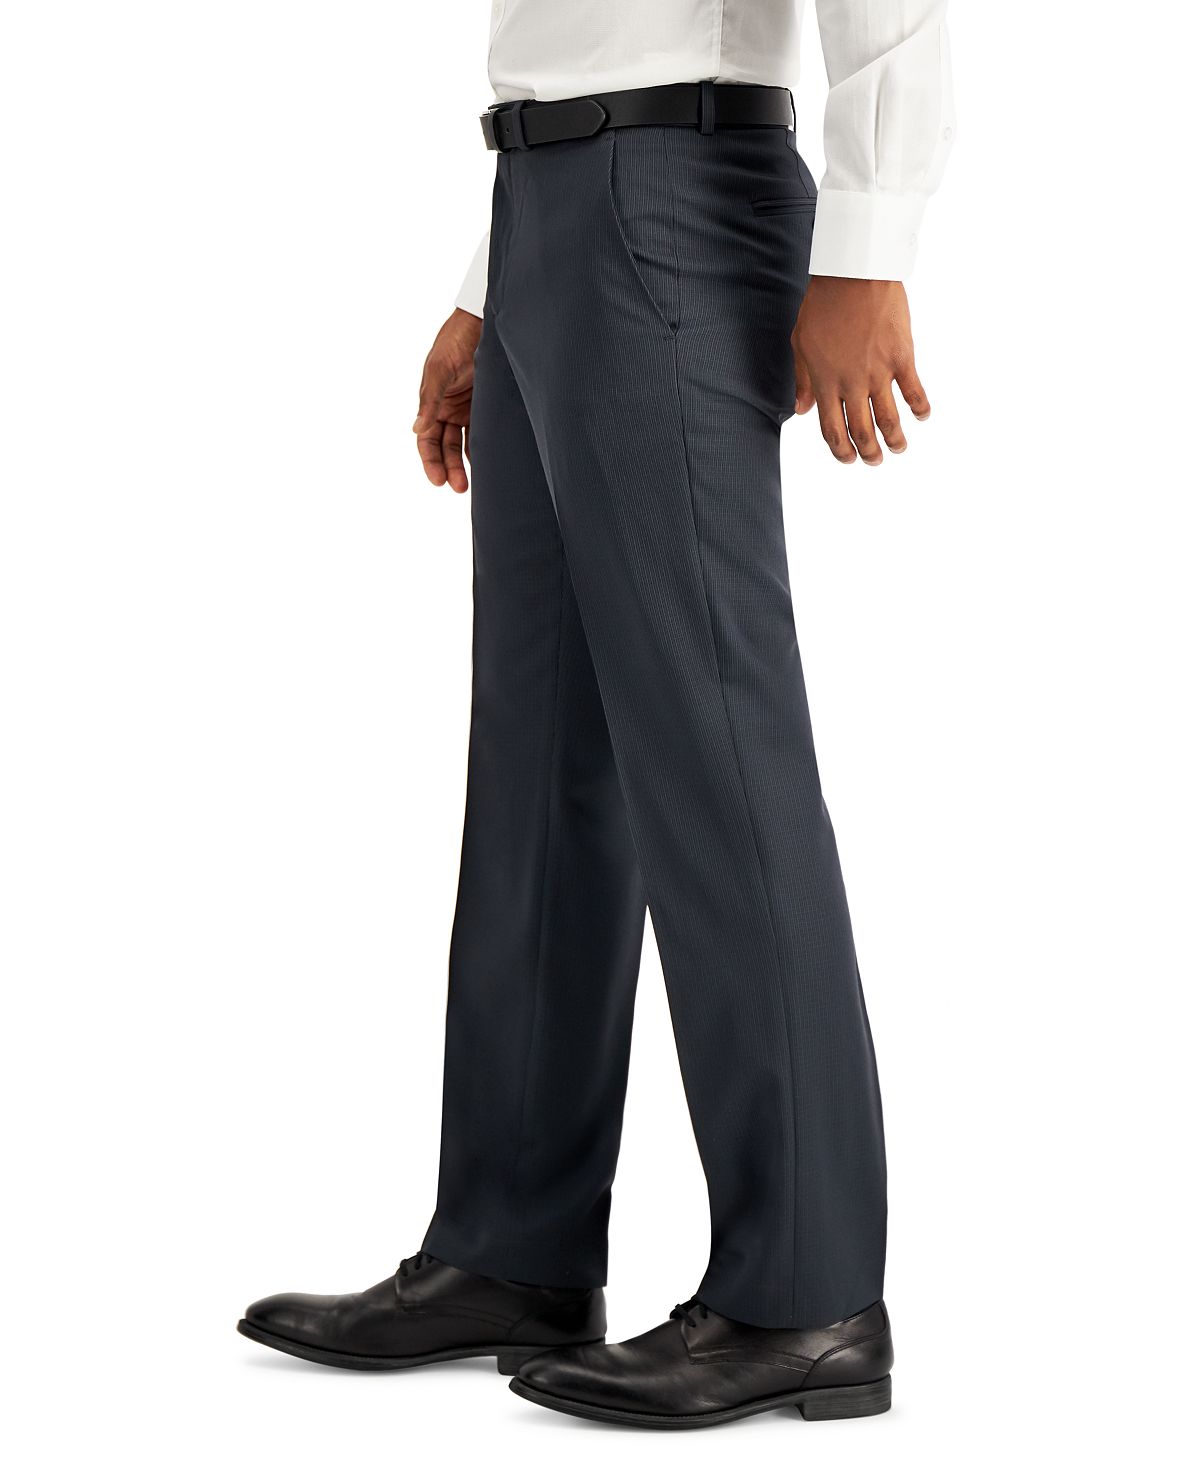 Perry Ellis Portfolio Modern-fit Subtle Check Performance Dress Pants Charcoal